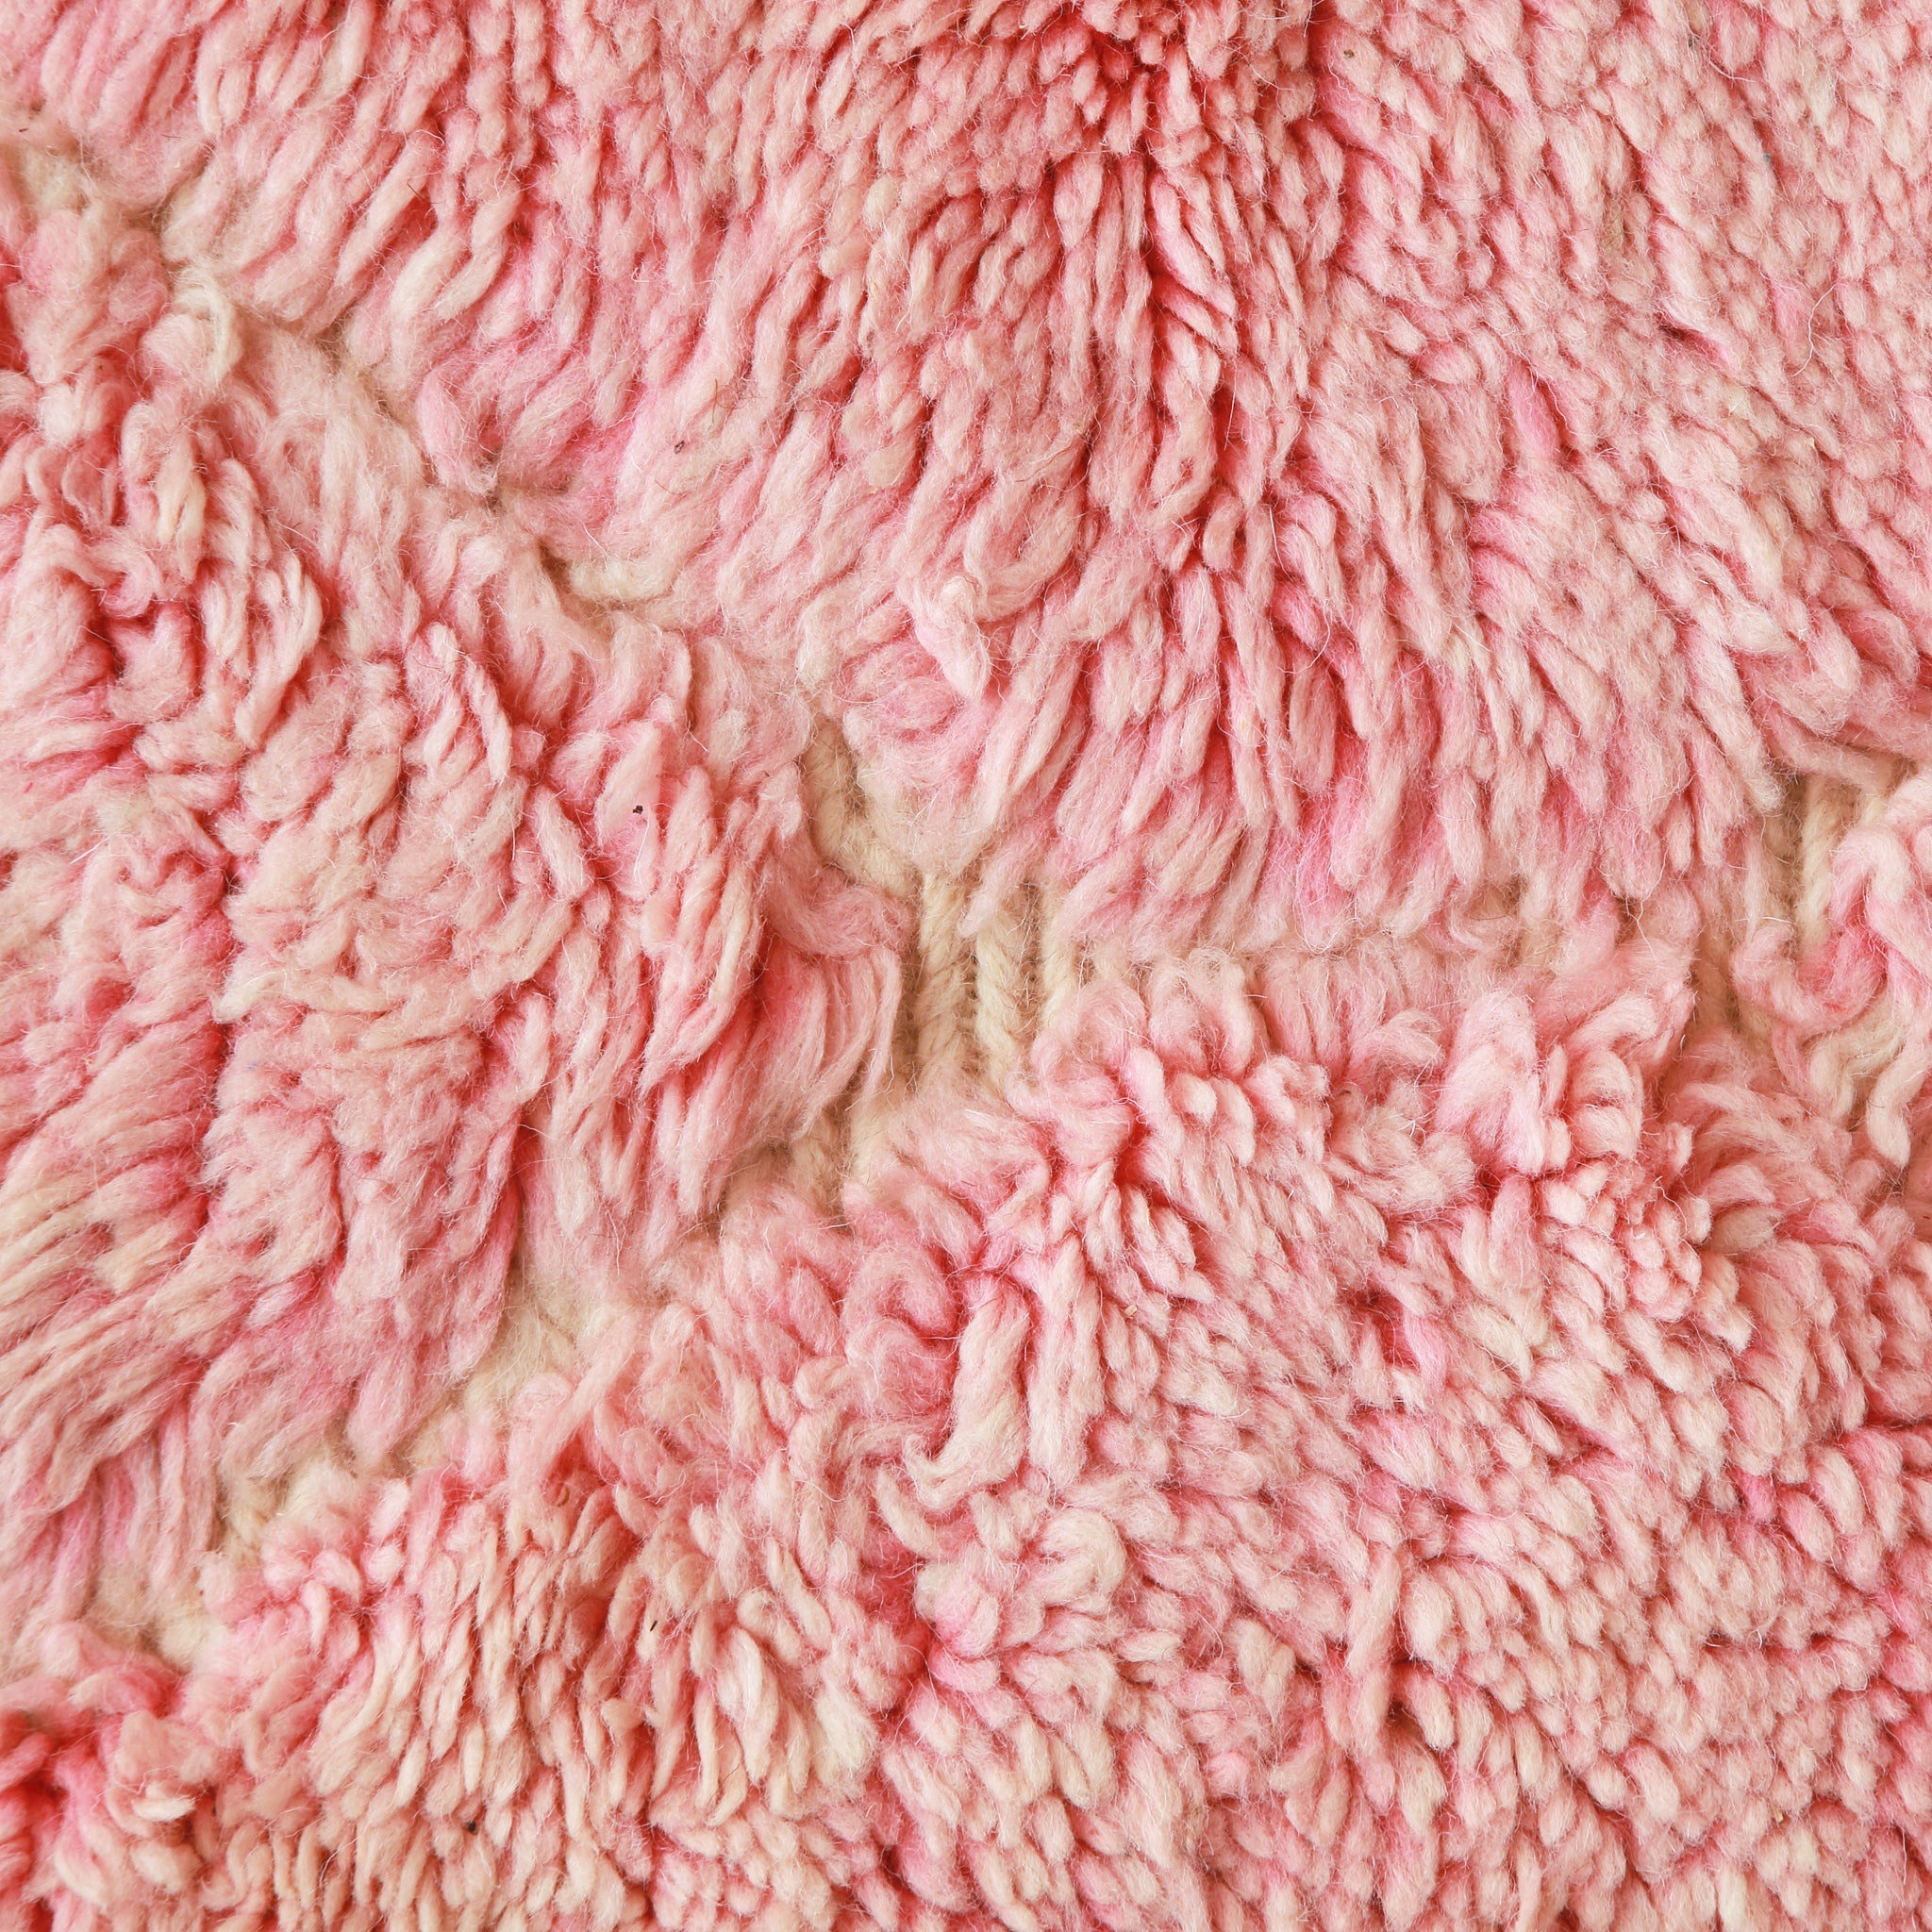 primo piano ravviciatano dei lunghi peli di lana rosa che evidenziano le sfurature di colore 